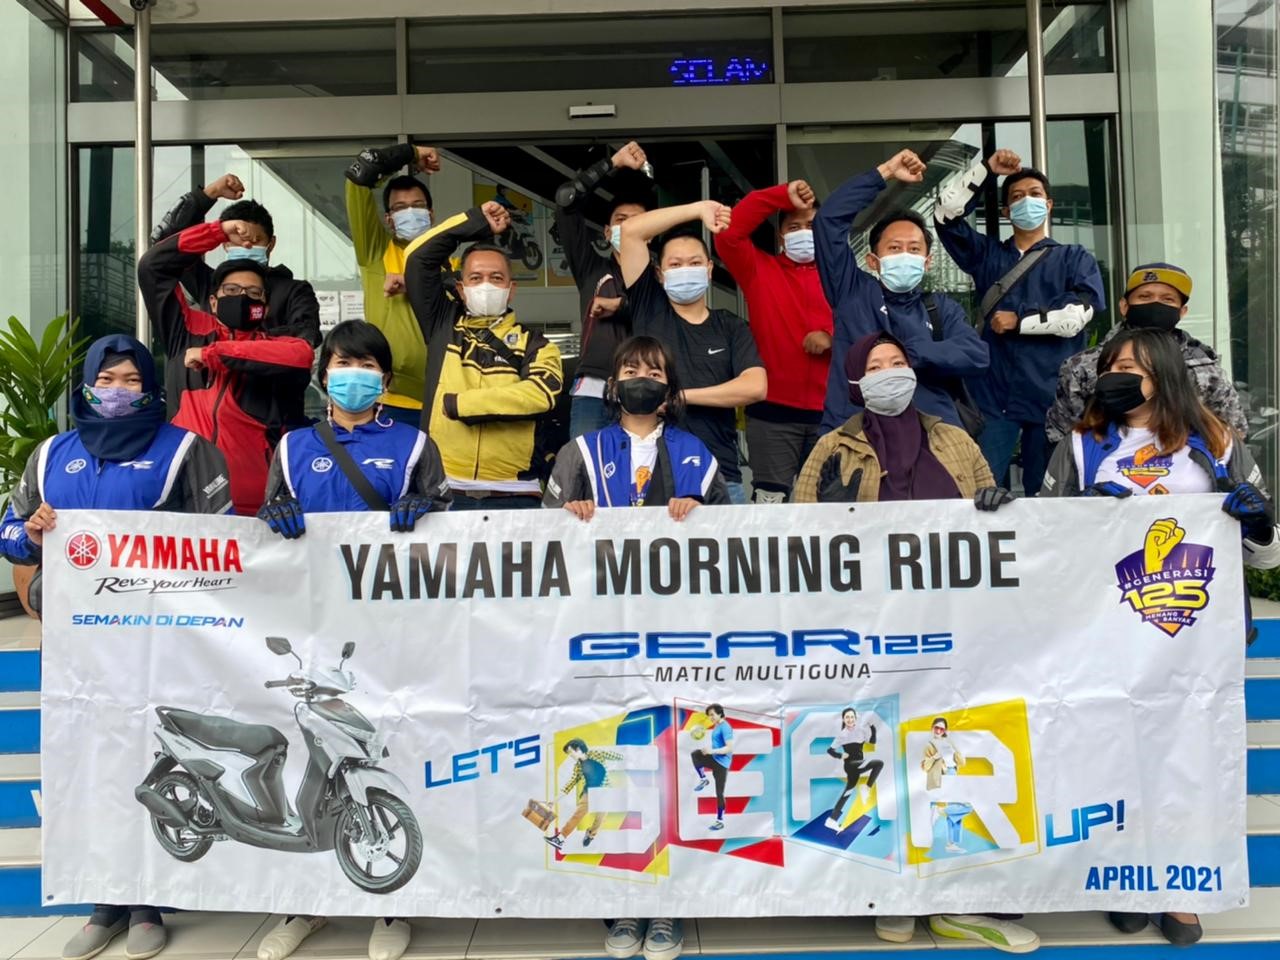 YAMAMORI 2021, Yamaha ajak media, konsumen dan komunitas ikut “GEAR 125 Challenge”